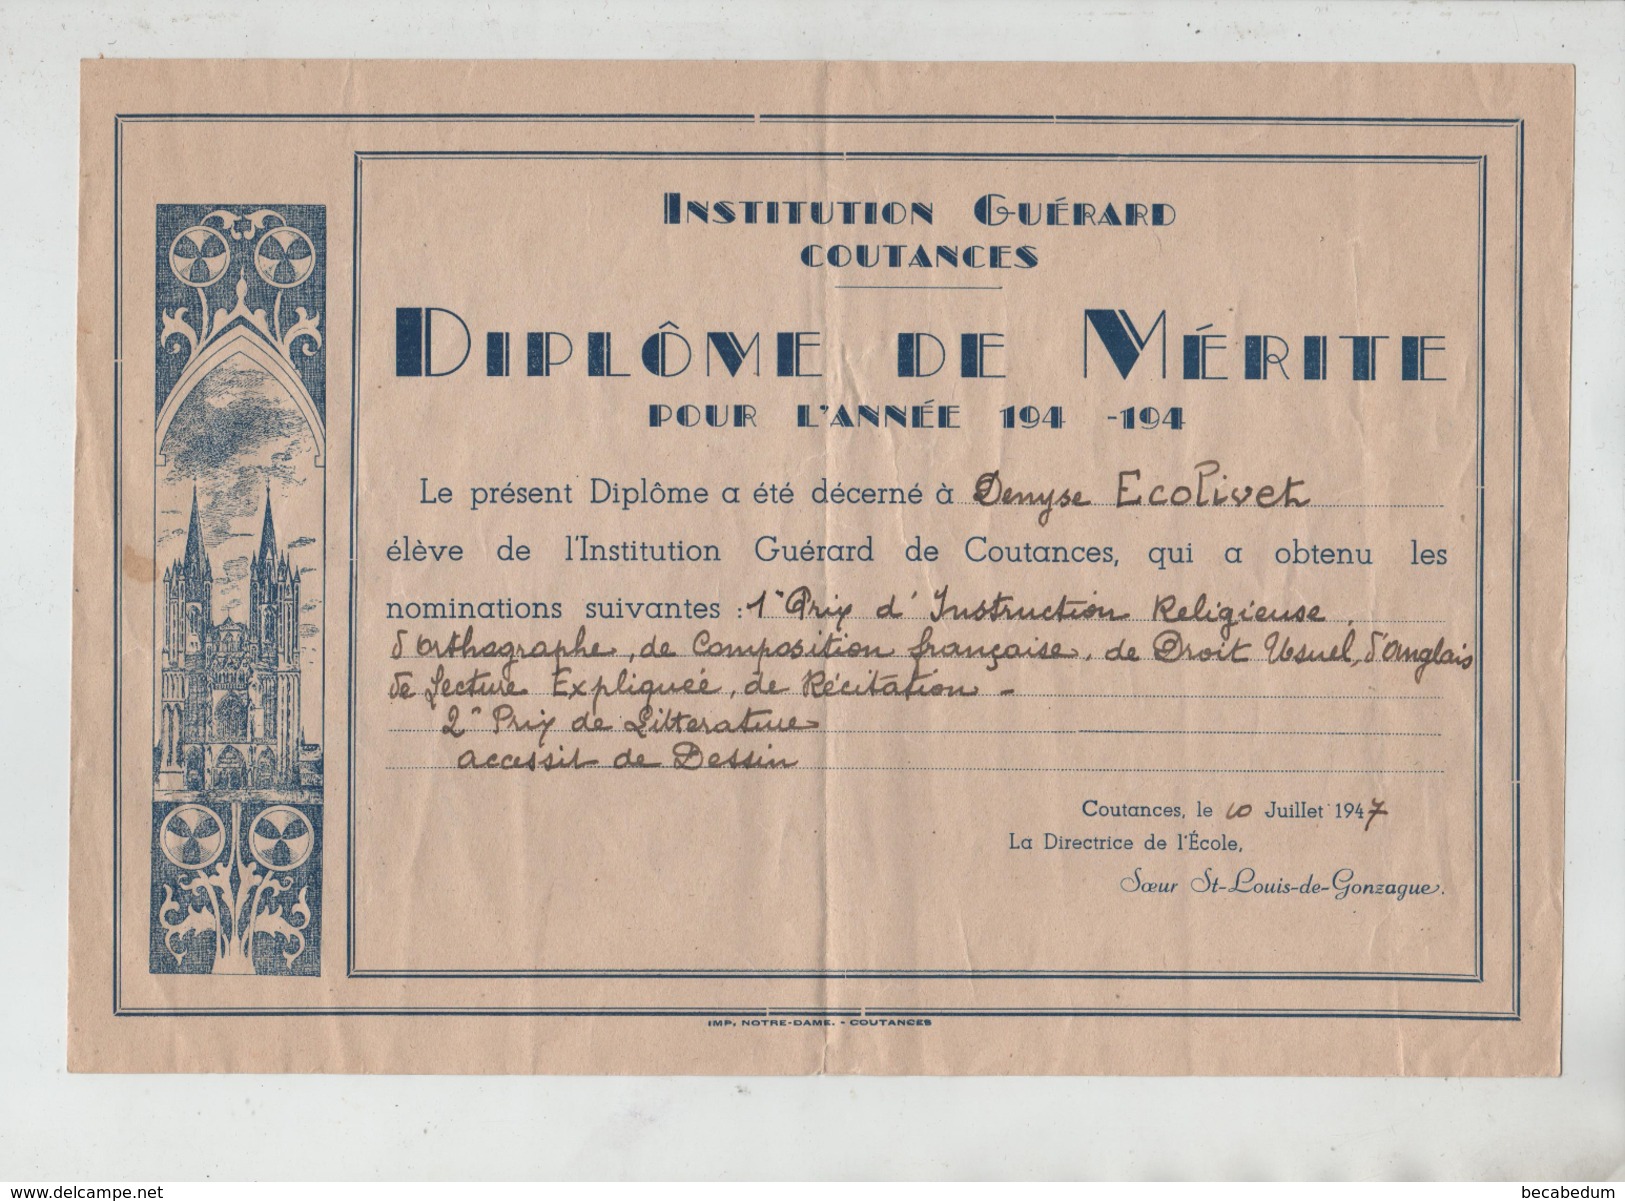 Institution Guérard Coutances Diplôme De Mérite 1947 Soeur St Louis De Gonzague - Diplome Und Schulzeugnisse